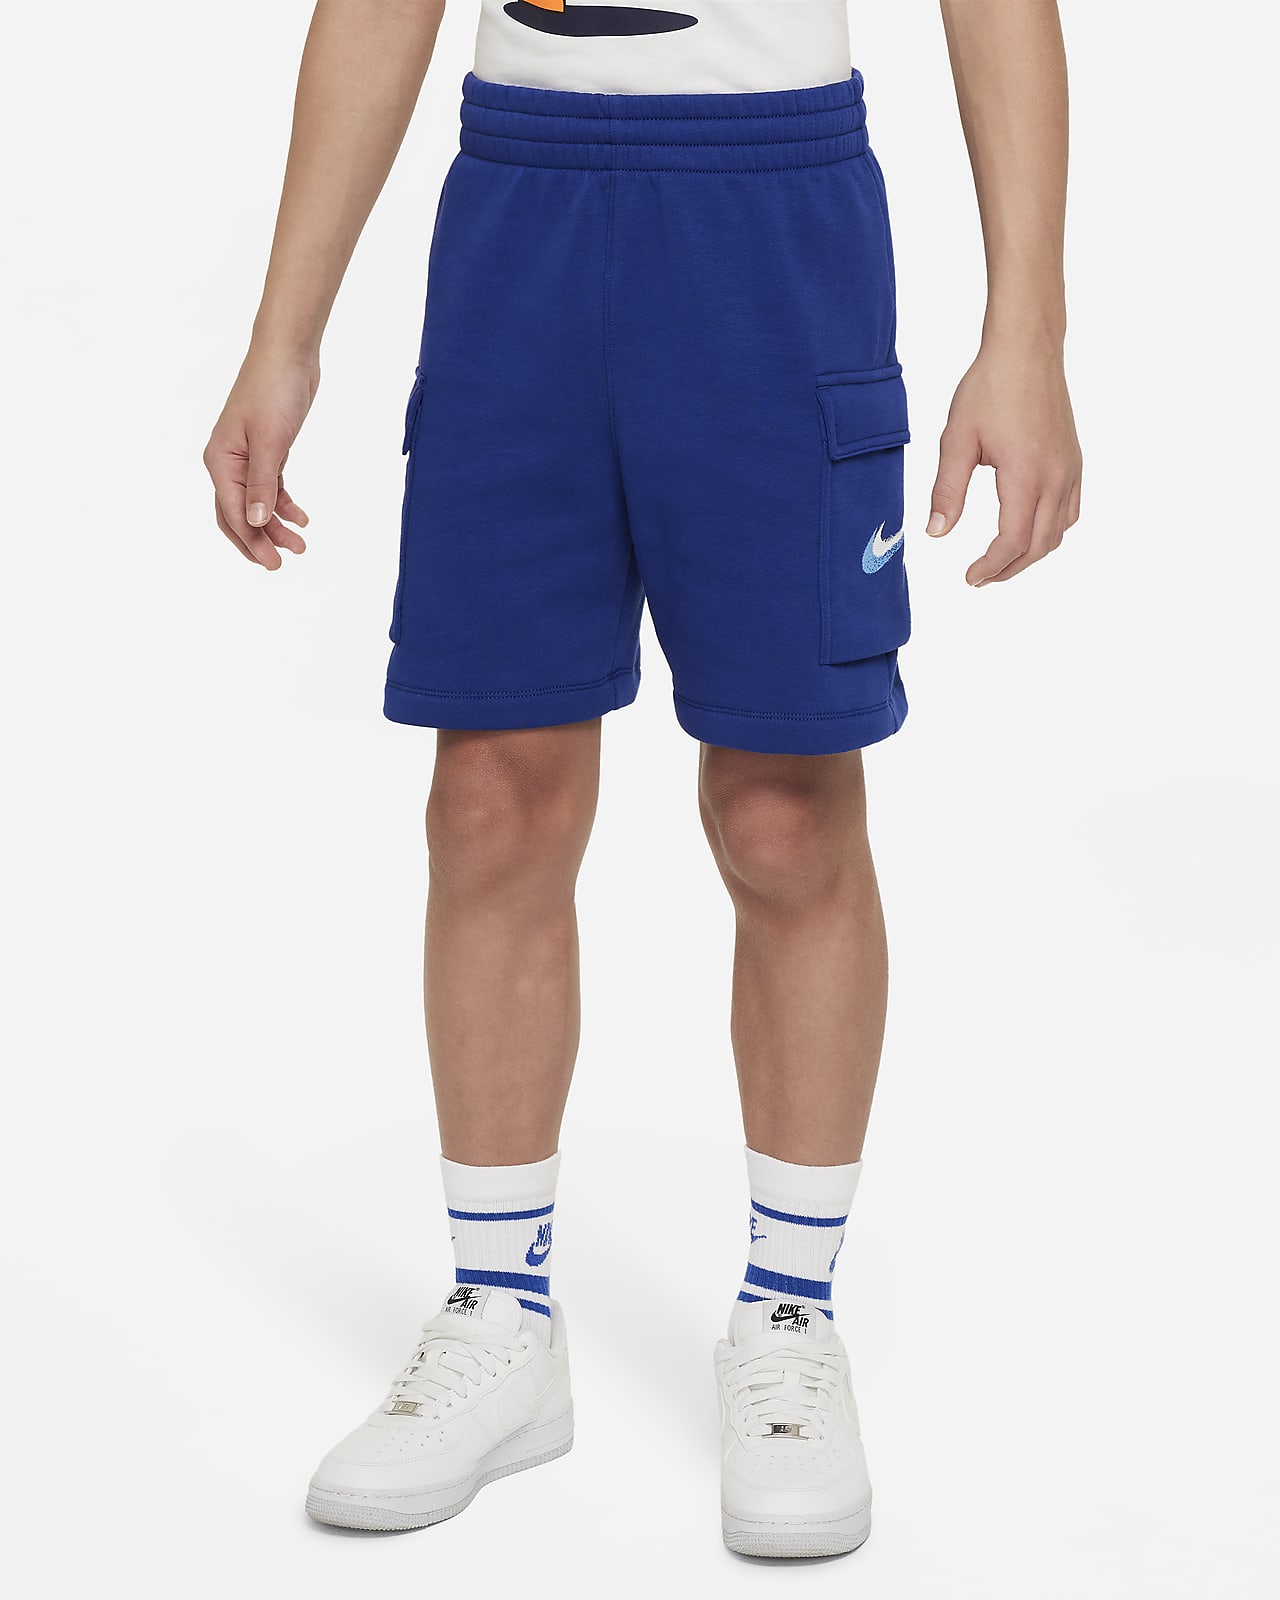 Calções de lã cardada Nike Sportswear Standard Issue Júnior (Rapaz)